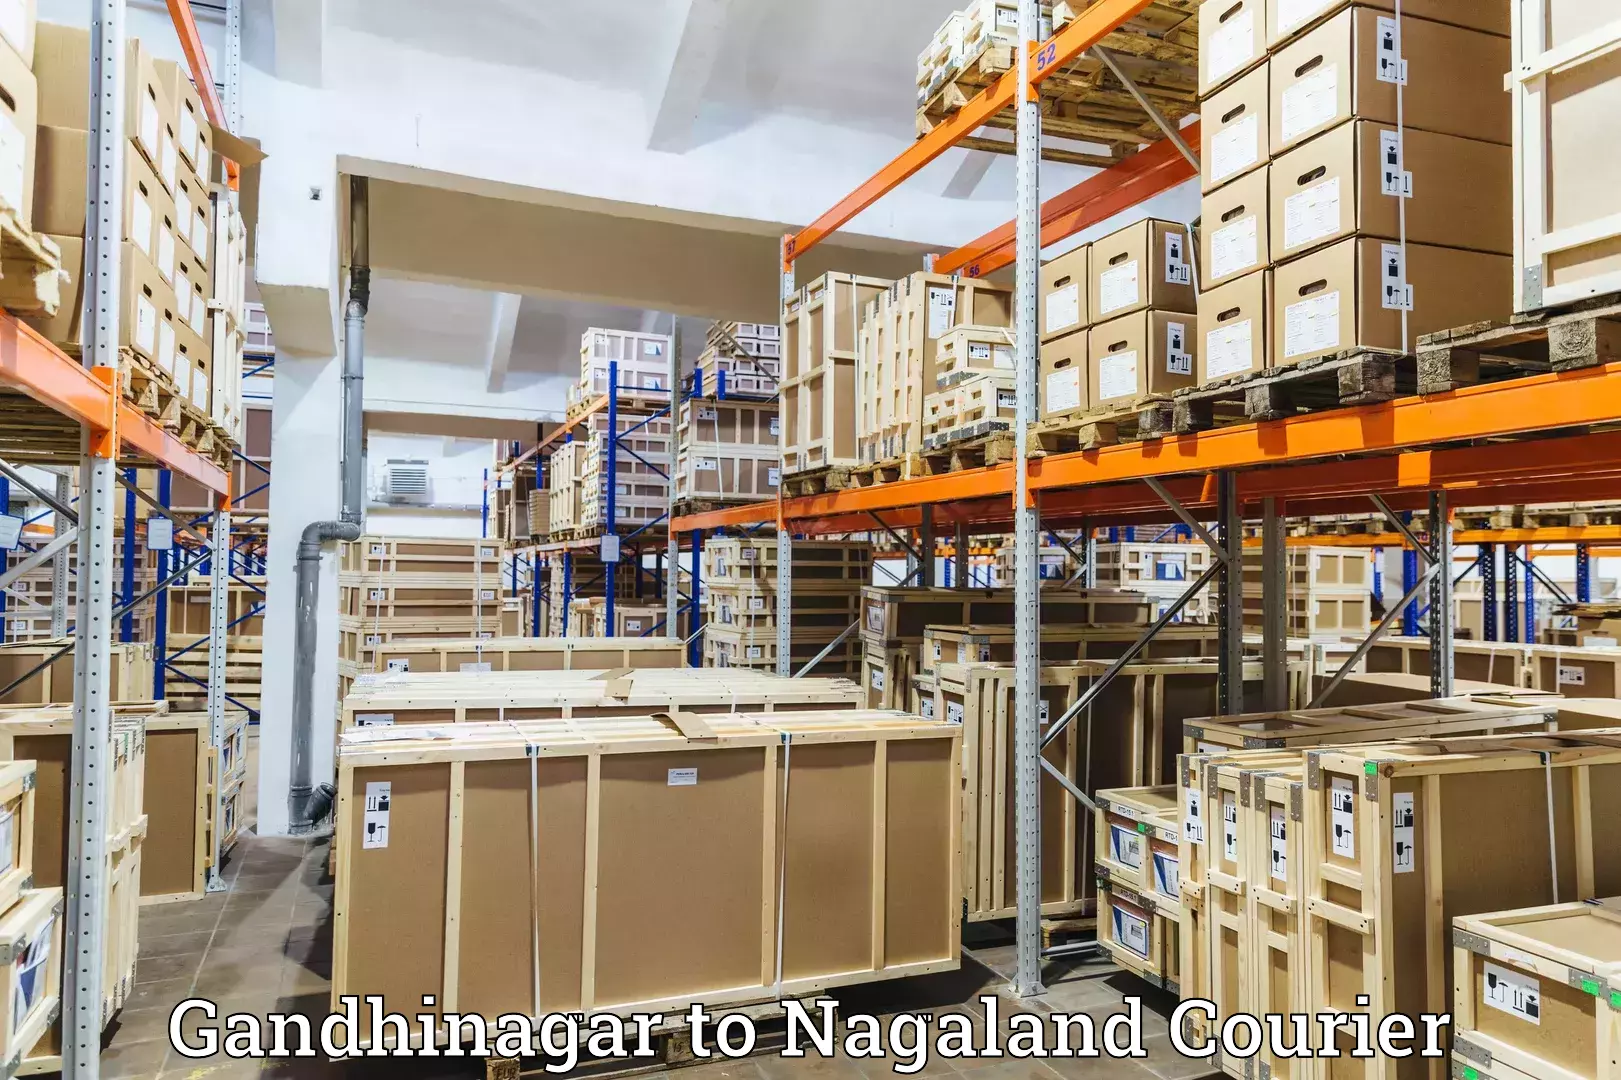 Nationwide courier service Gandhinagar to Chumukedima